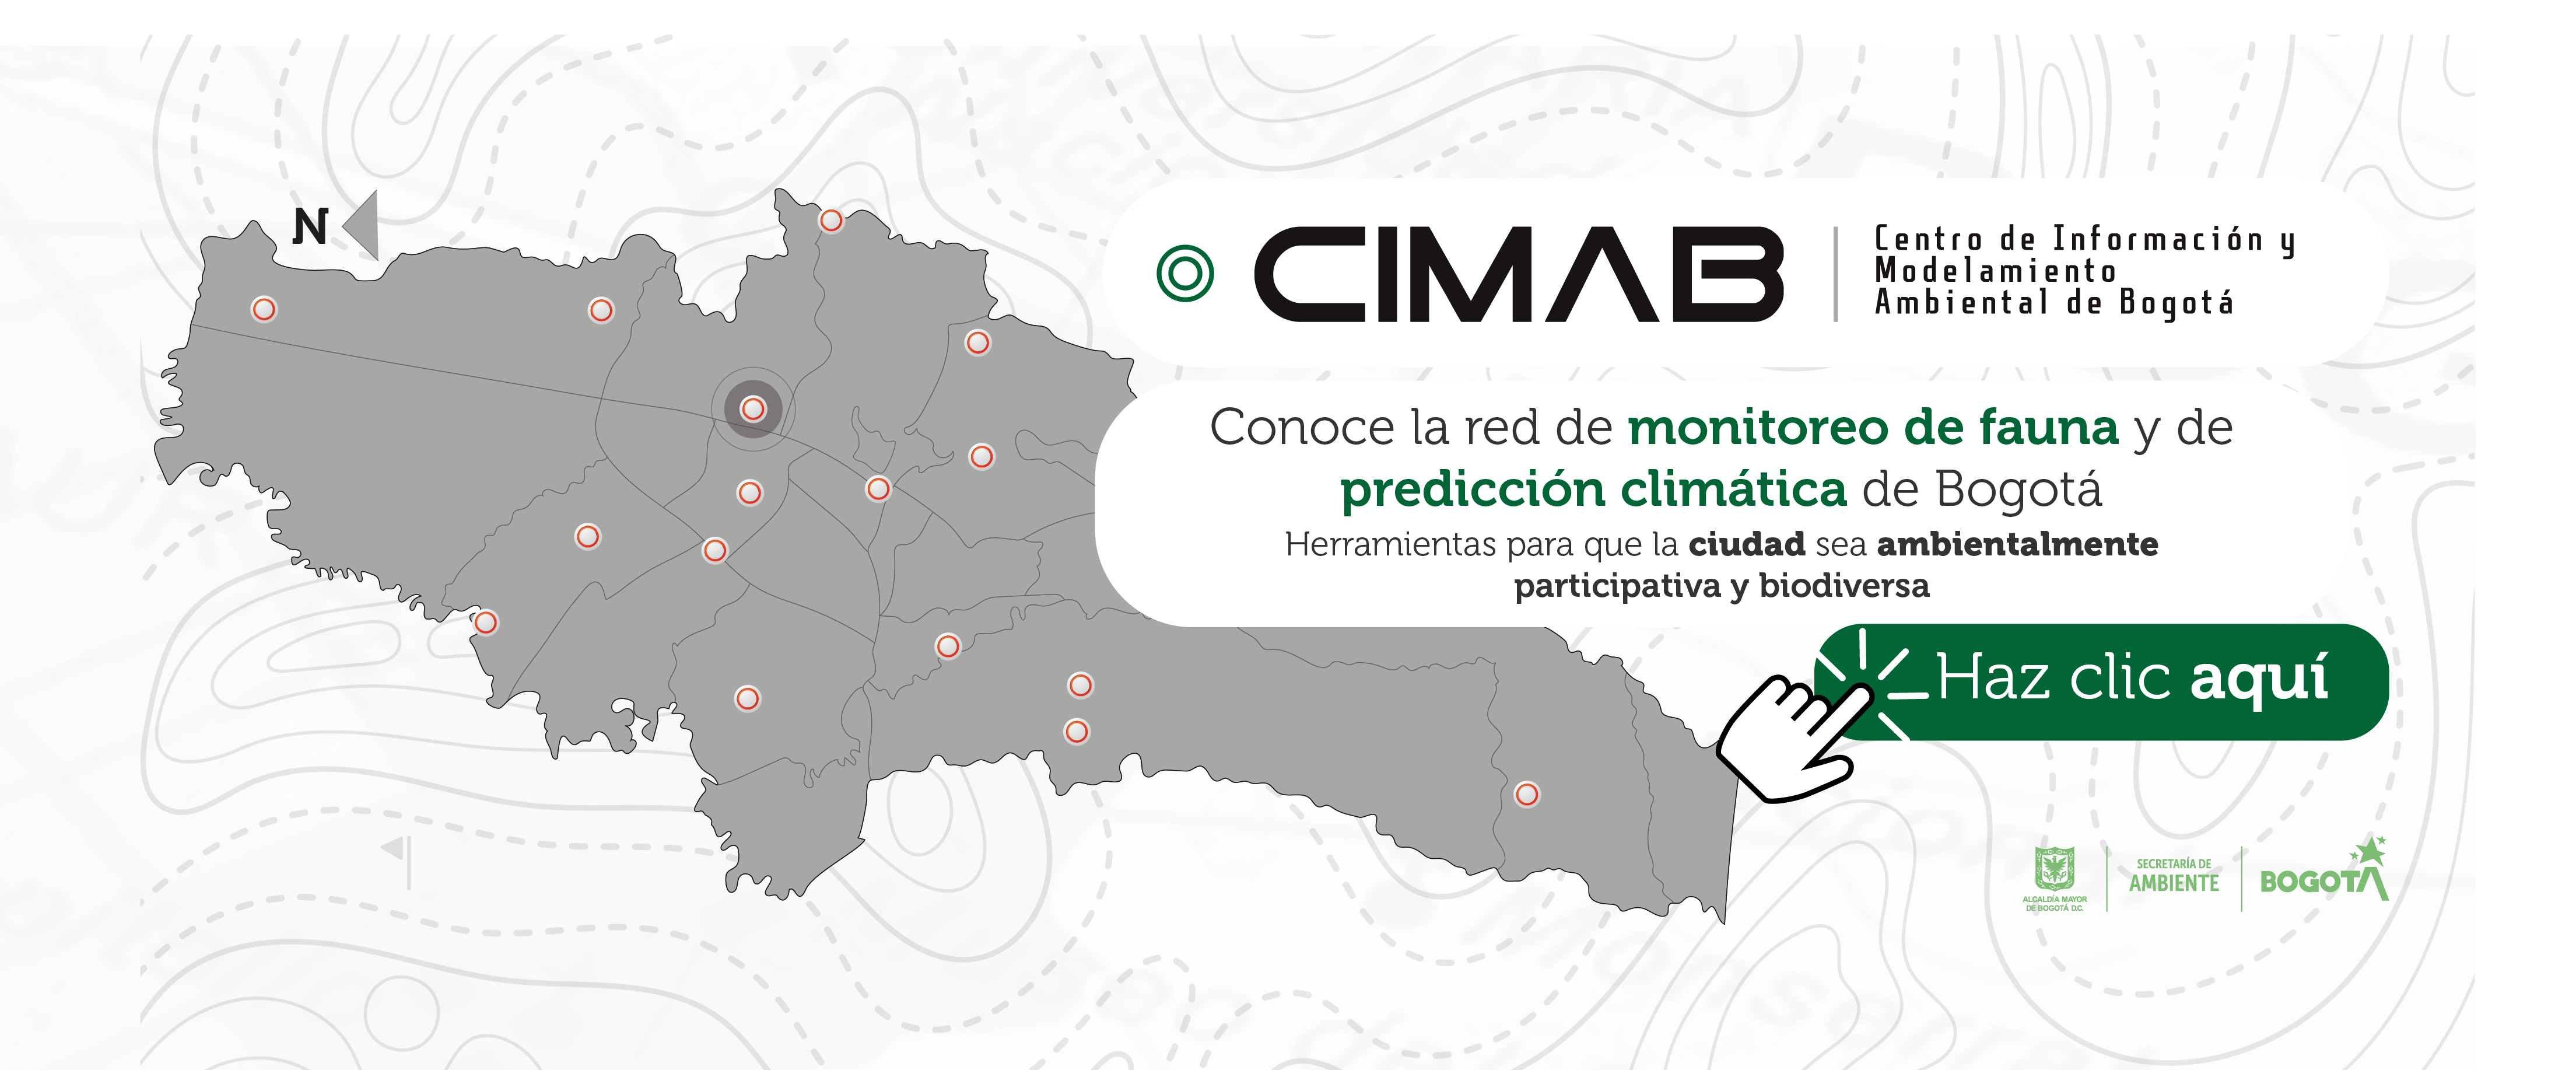 CIMAB. Conoce la red de monitoreo de fauna y de predicción climática de Bogotá, dos herramientas para que la ciudad sea ambientalmente participativa y biodiversa. Haz clic aquí